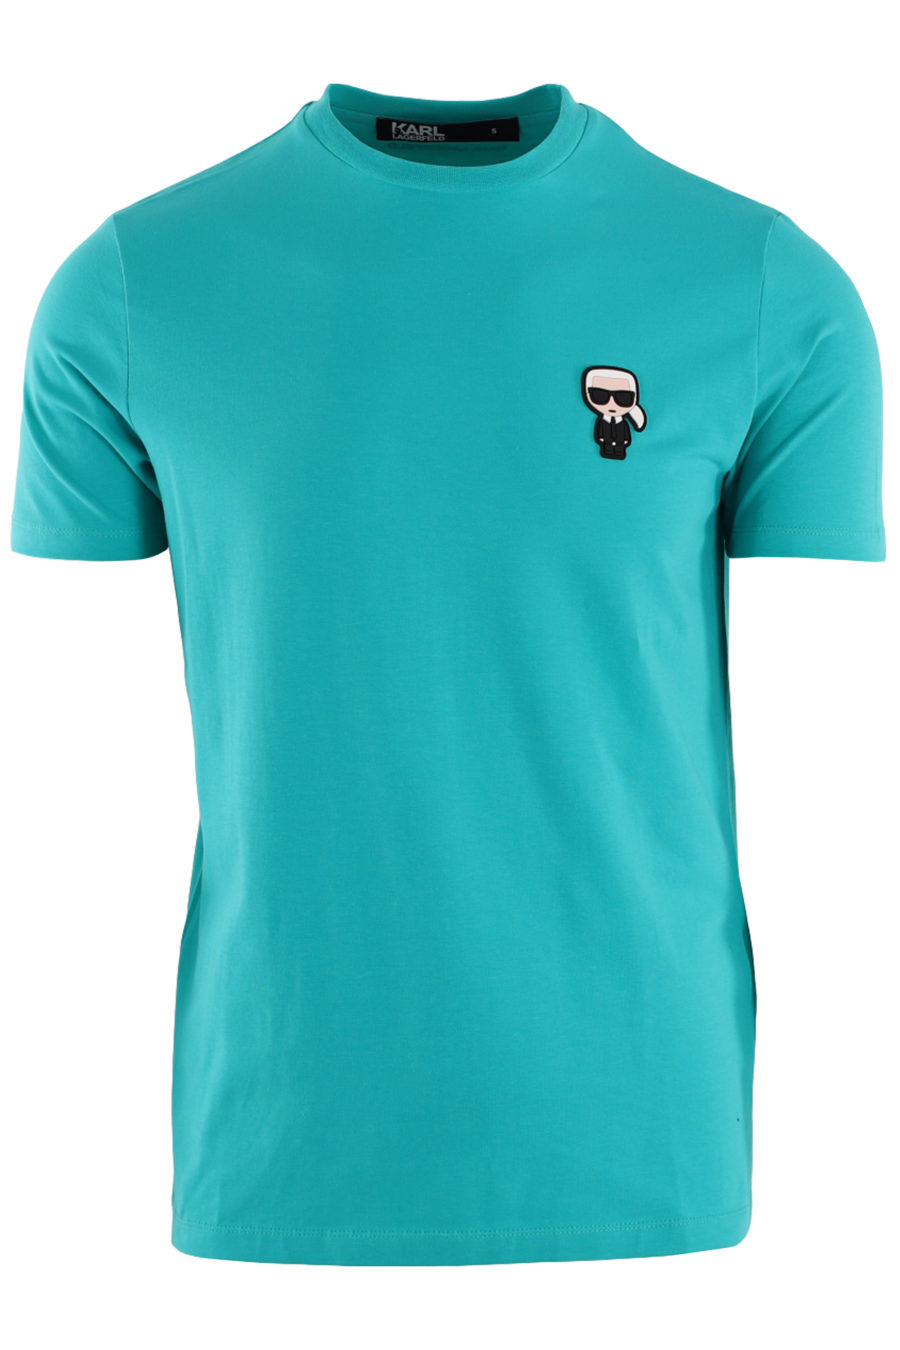 Türkisfarbenes T-Shirt mit kleinem Gummilogo - IMG 8755